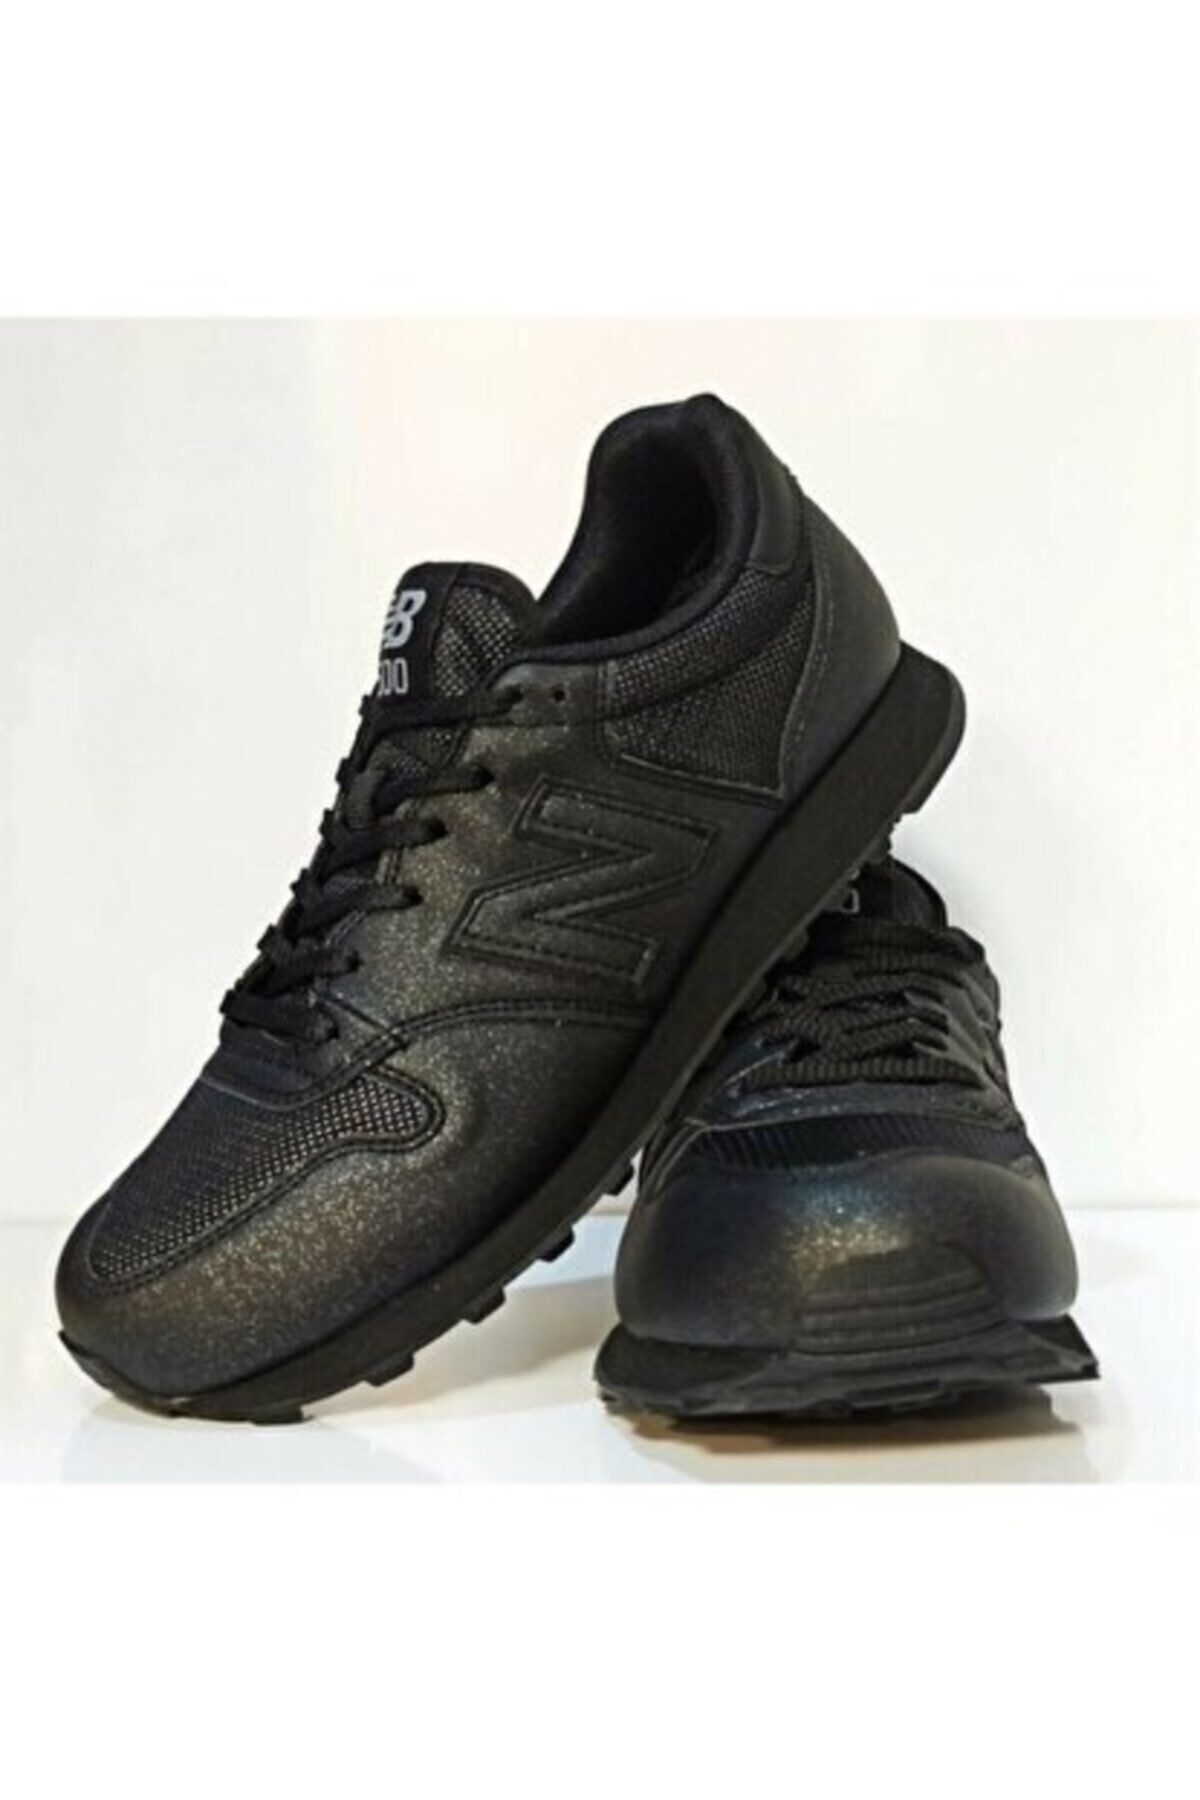 New Balance Kadın Yürüyüş Ayakkabısı - Lifestyle - Gw500gbb